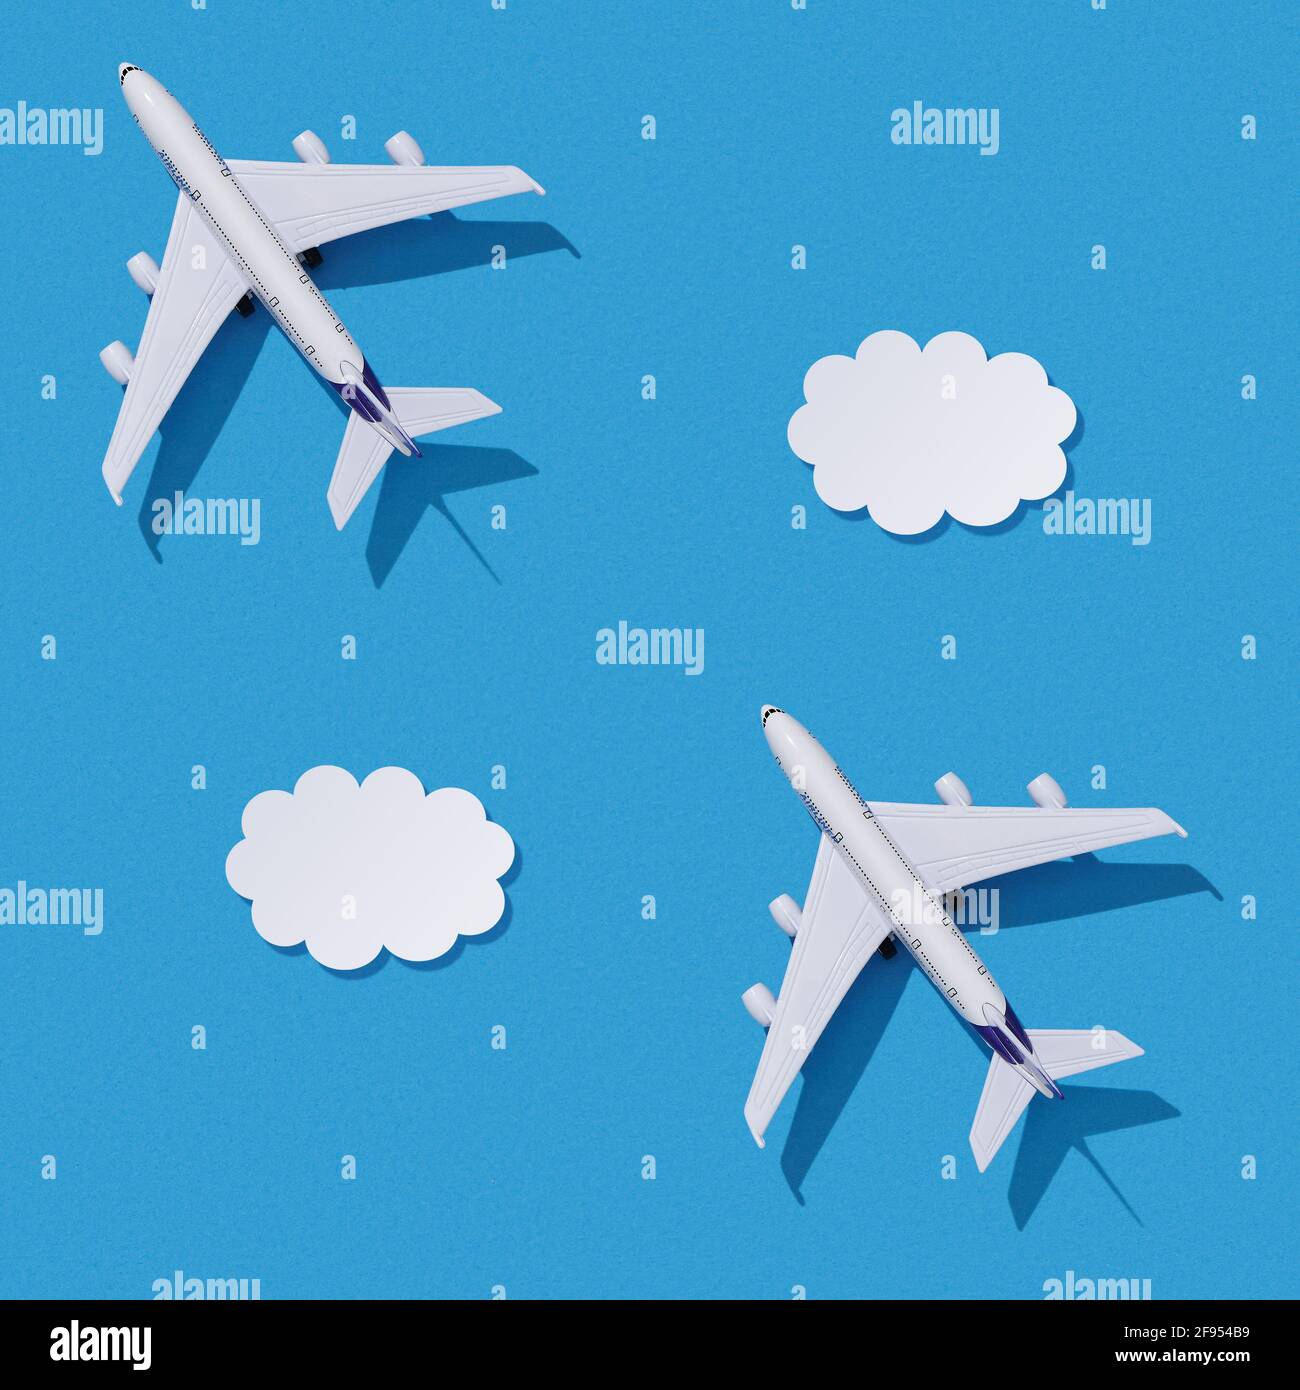 Avion miniature sur fond de papier coloré. Conception plate de la conception de voyage avec avion et nuages sur ciel bleu. Texture sans couture. Banque D'Images